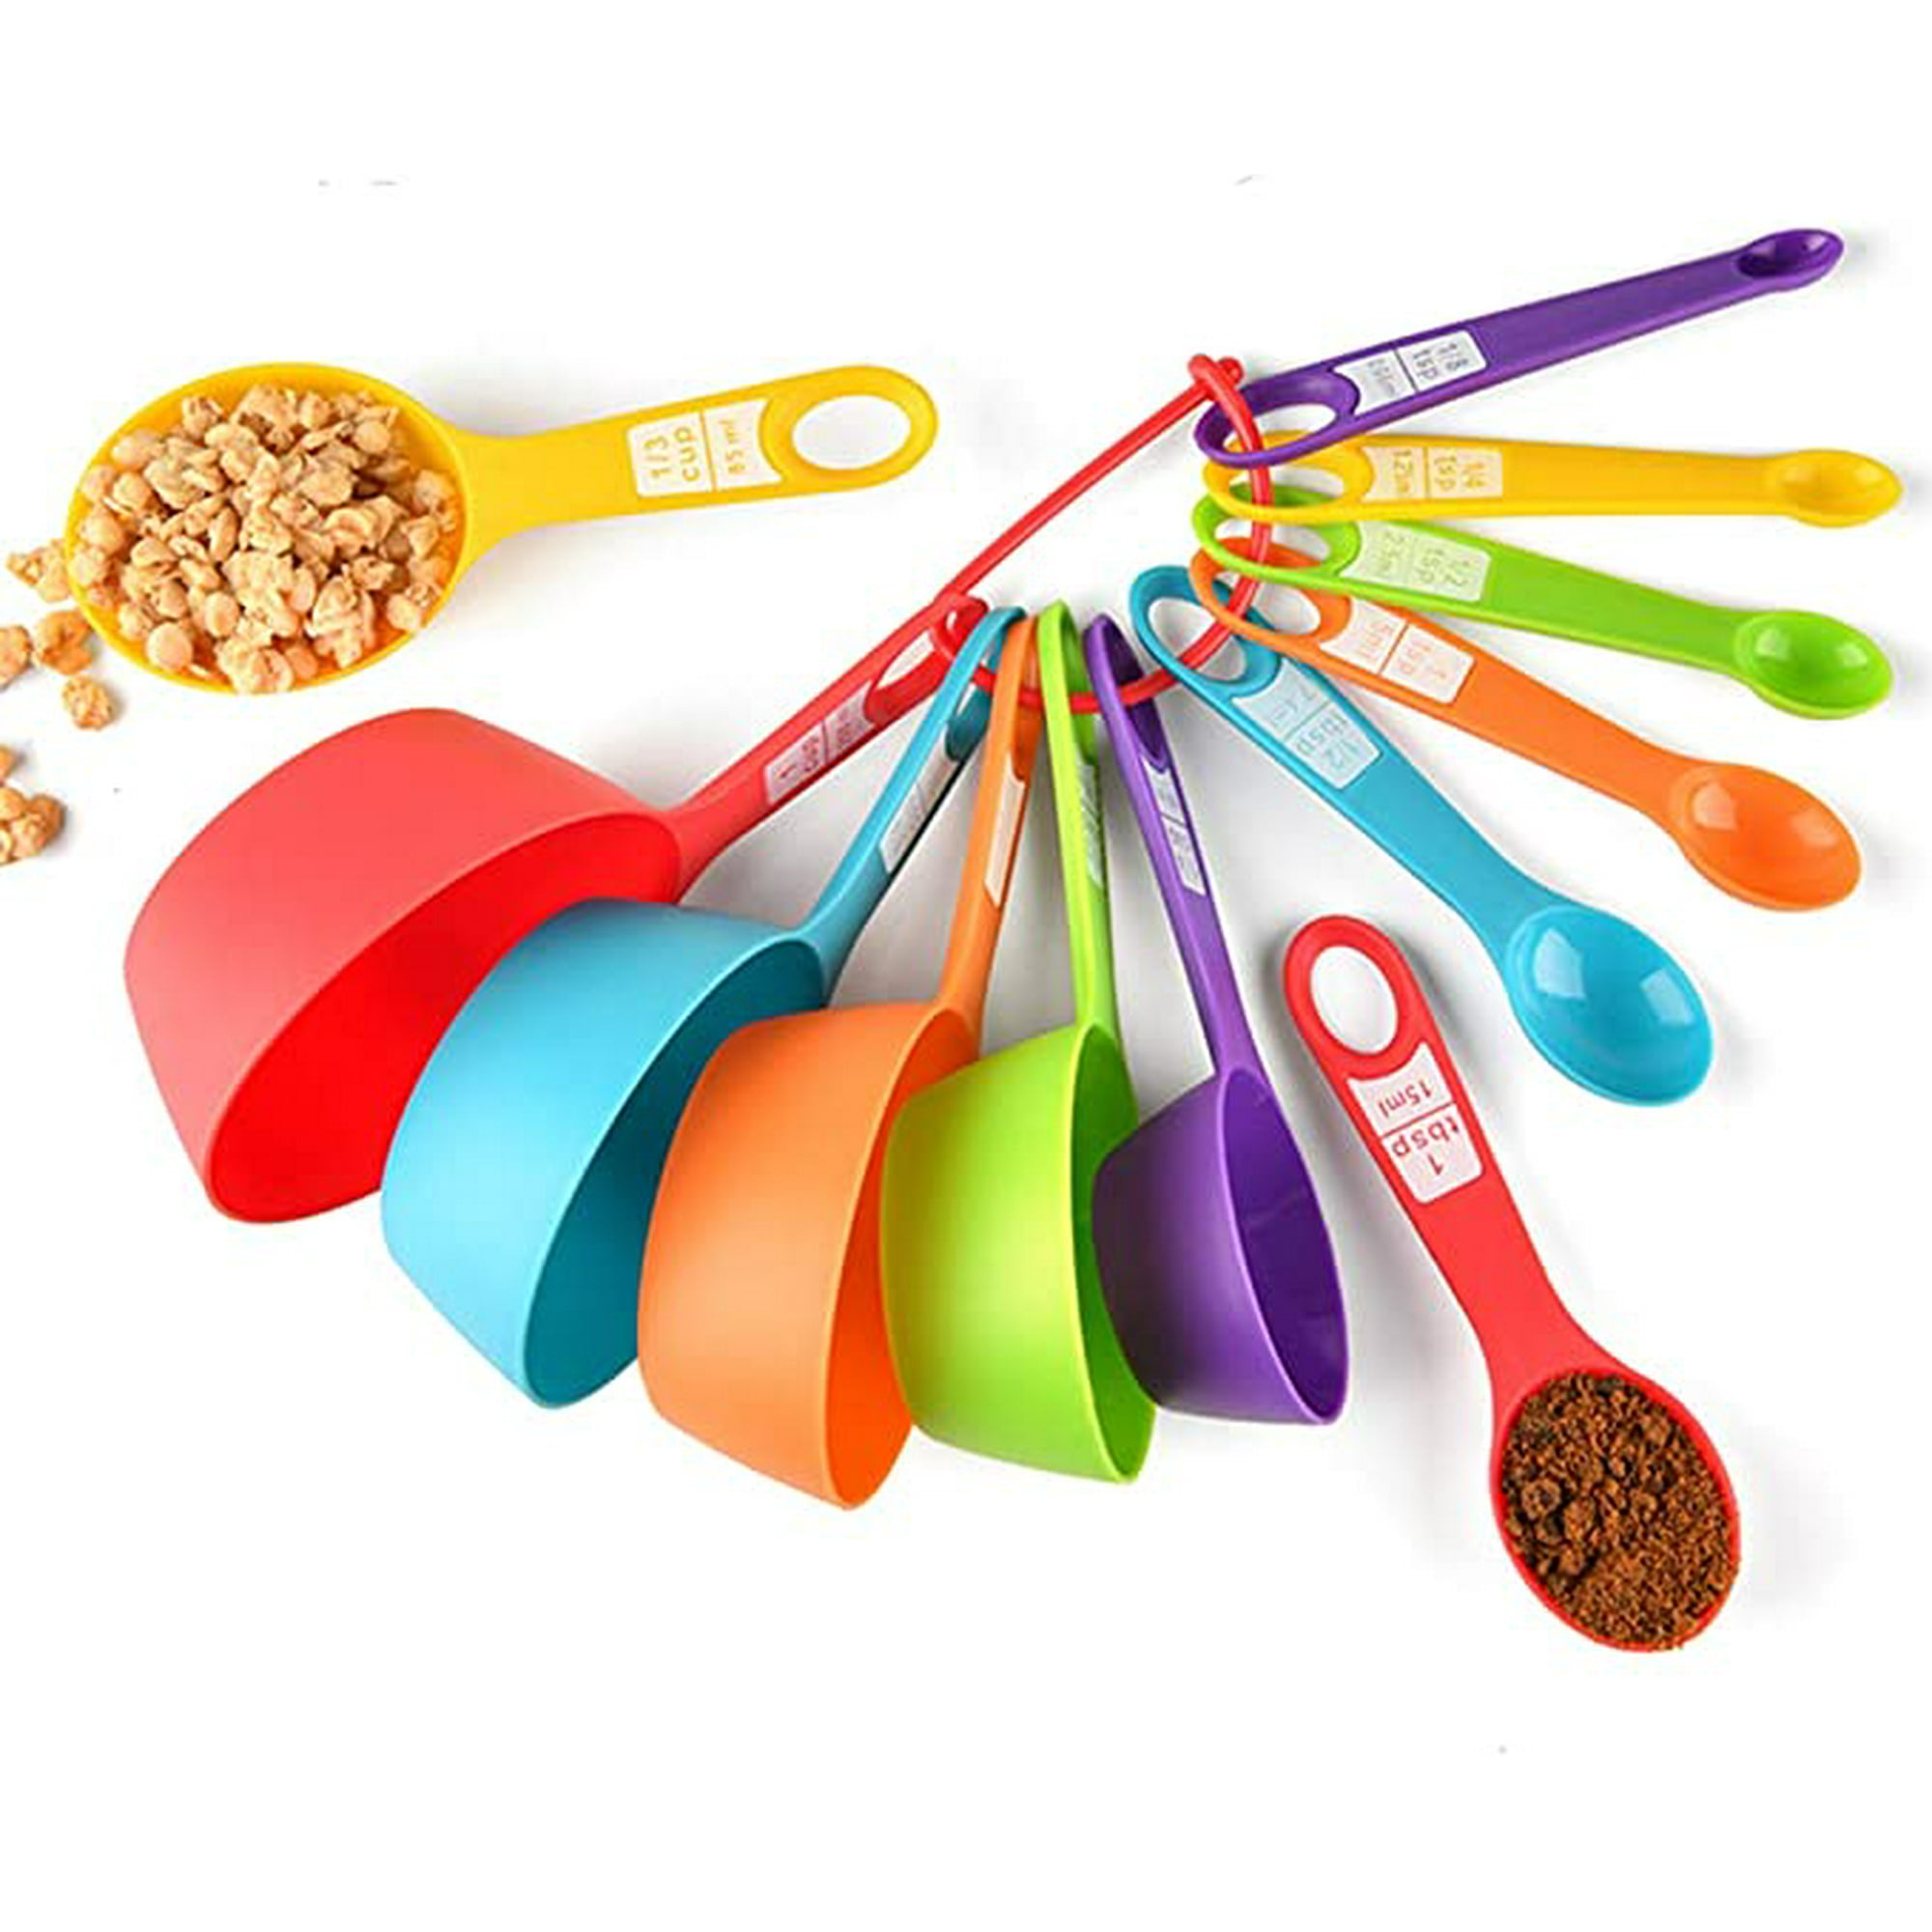  Vaso medidor, 1/5/10 x cucharillas de plástico para medir  cucharas de cocina, para el hogar o la cocina : Hogar y Cocina